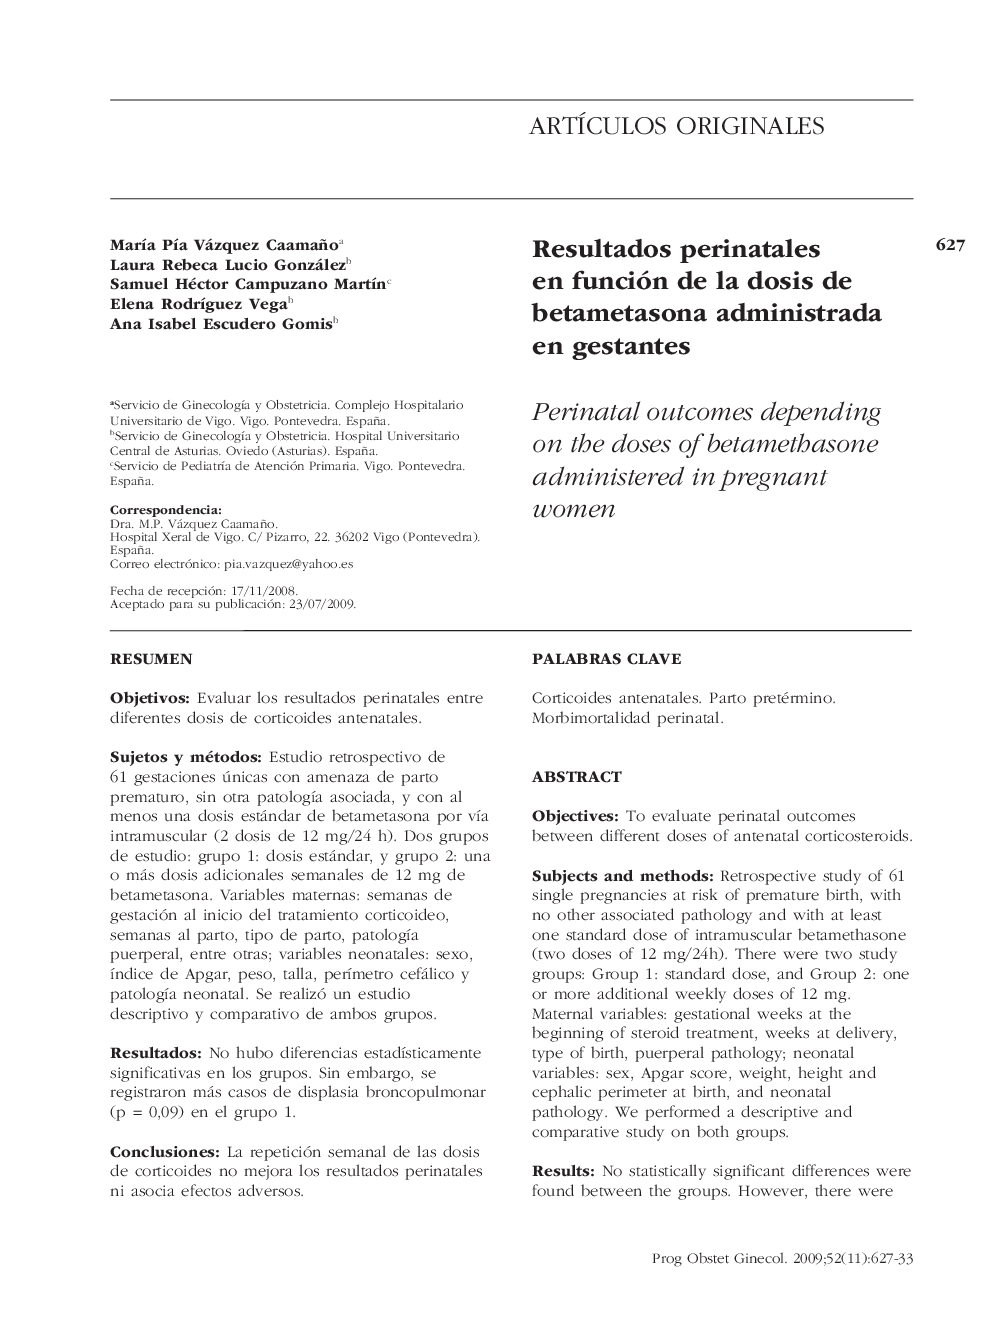 Resultados perinatales en función de la dosis de betametasona administrada en gestantes